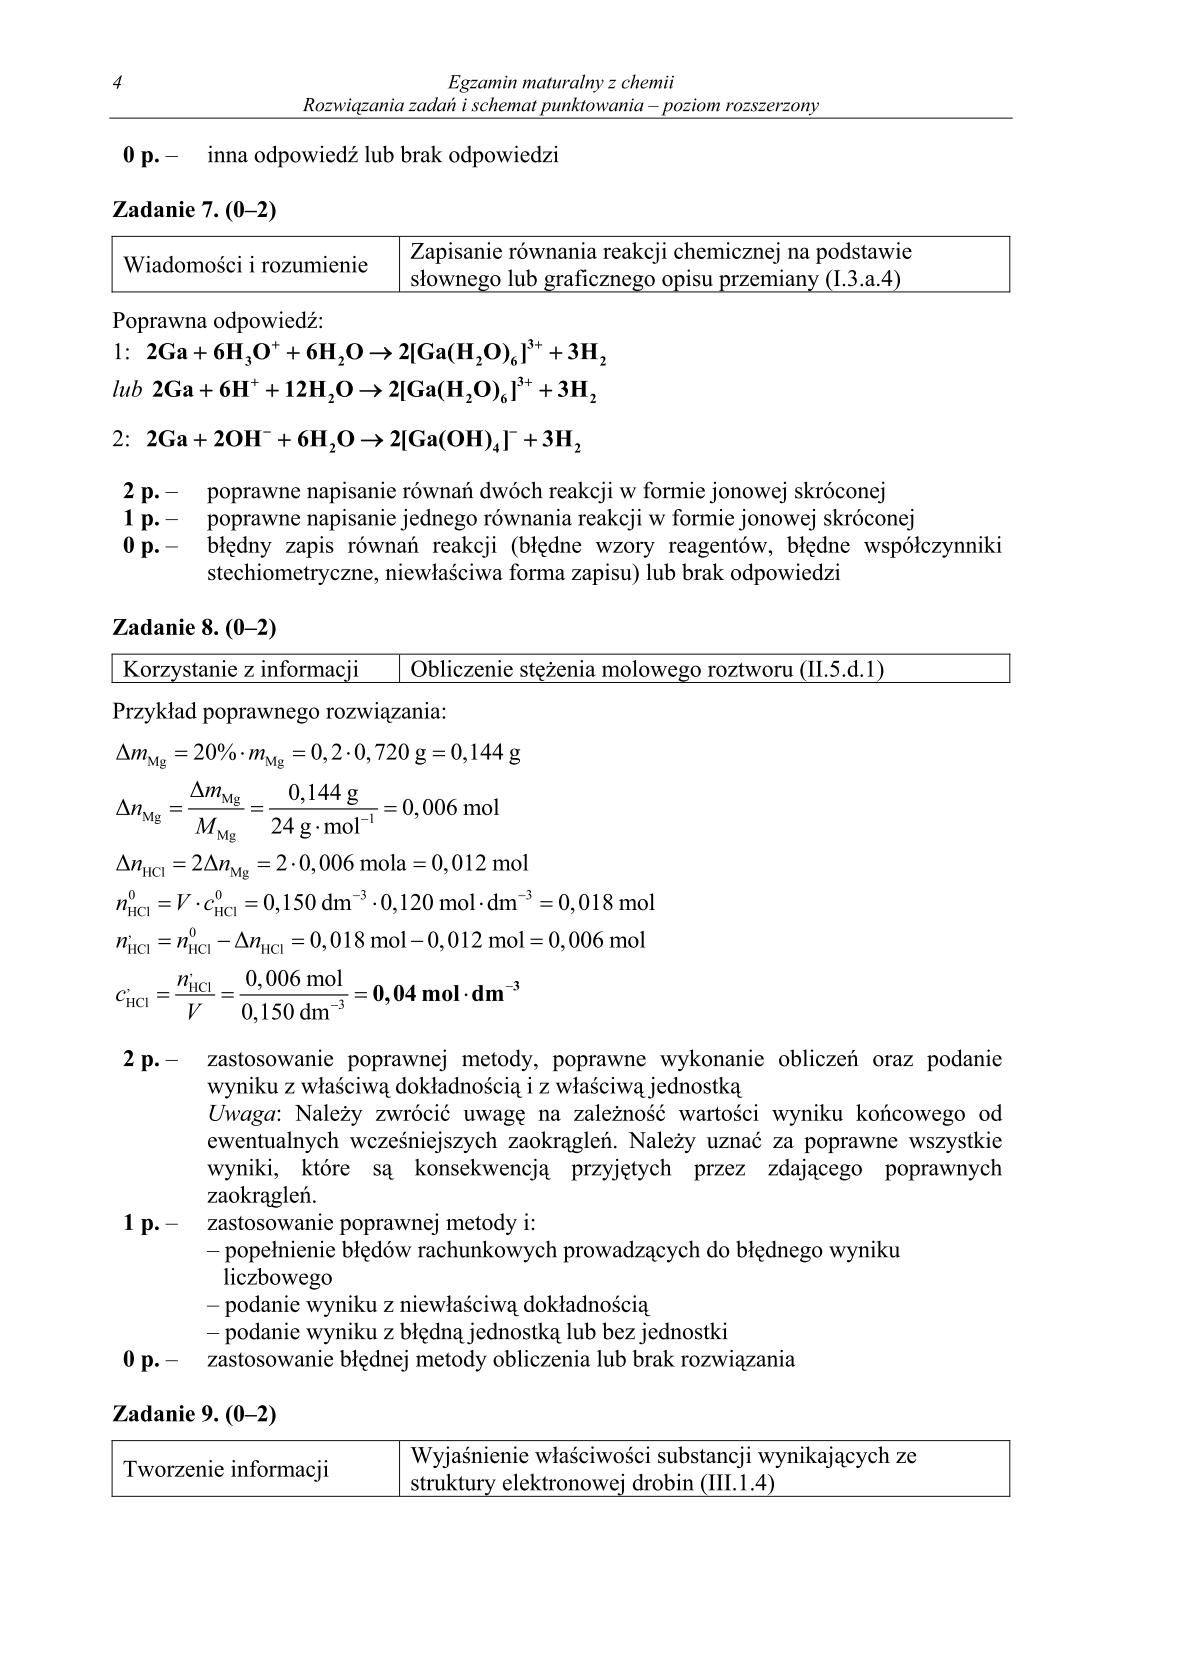 odpowiedzi-chemia-poziom-rozszerzony-matura-2014-str.4